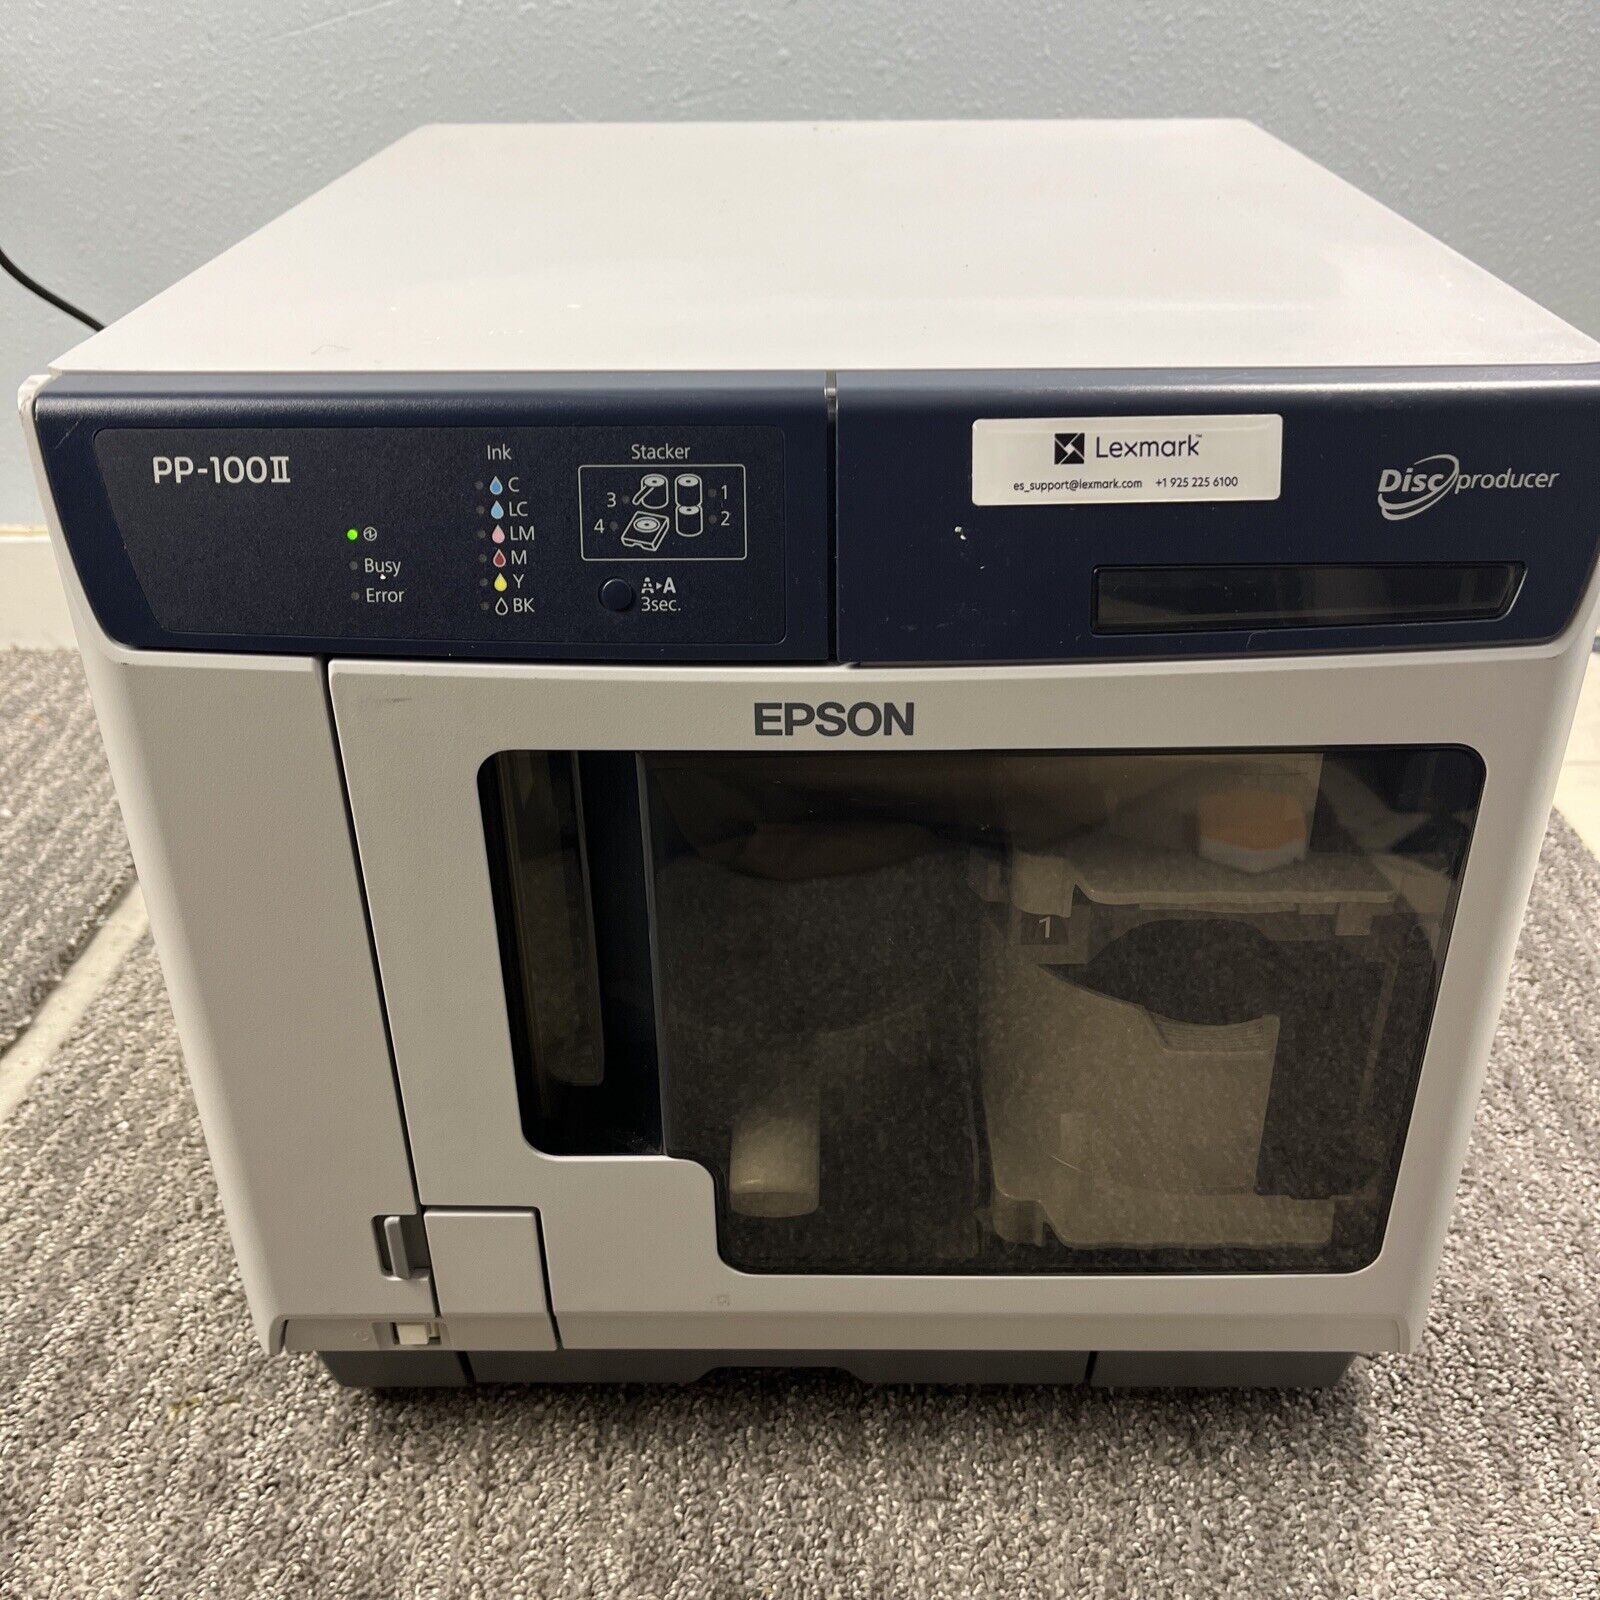 Epson PP-100II N181A USB DVD Disc Burner Producer and Inkjet Color Printer